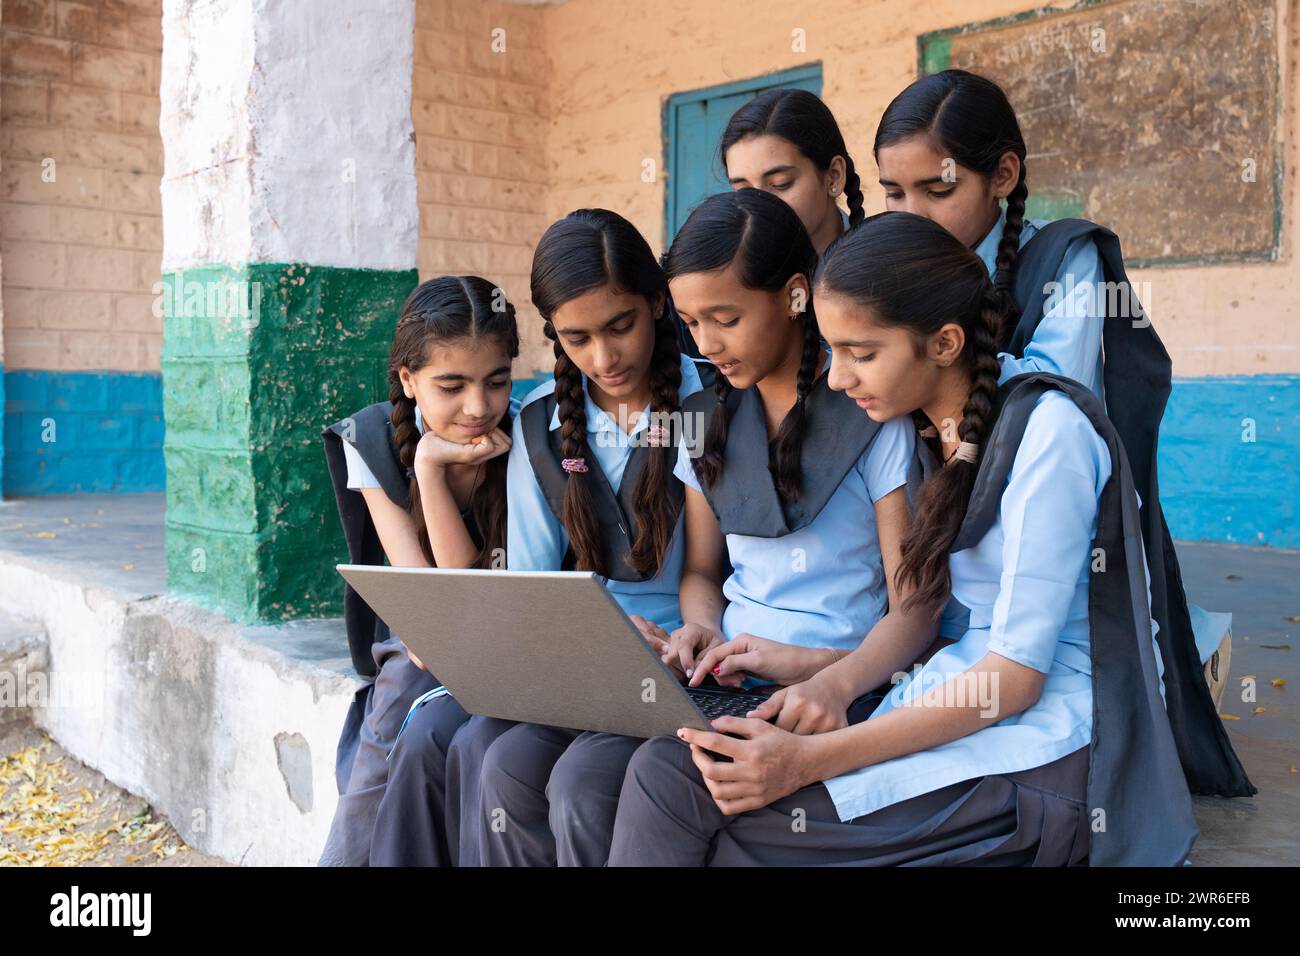 Gruppe ländlicher Schulmädchen in Uniform, die im Schulkorridor sitzen und am Laptop arbeiten - Konzept der digitalen Bildung Stockfoto